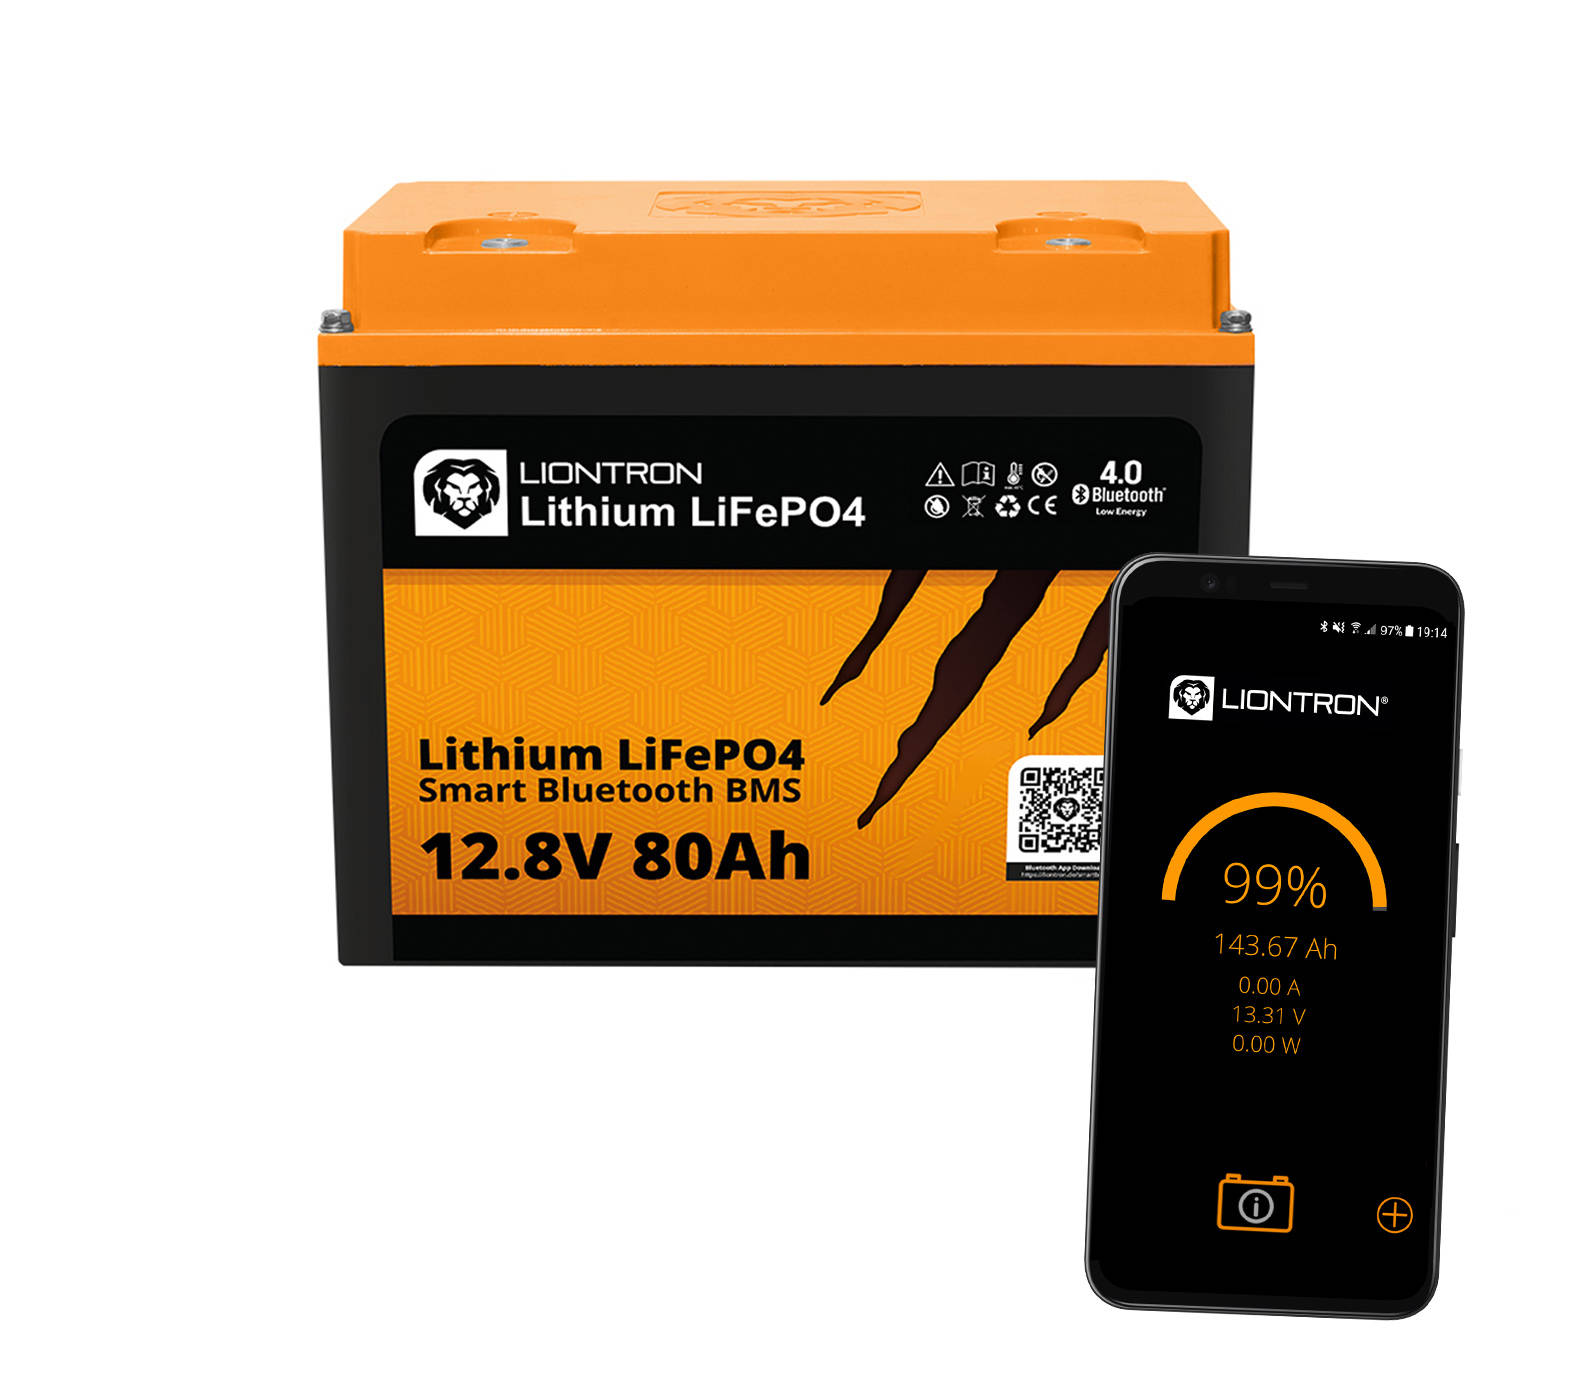 https://carbonzorro.com/eng_pl_80Ah-Liontron-Lithium-LiFePO4-LX-BMS-12-8V-Bluetooth-1116_4.jpg